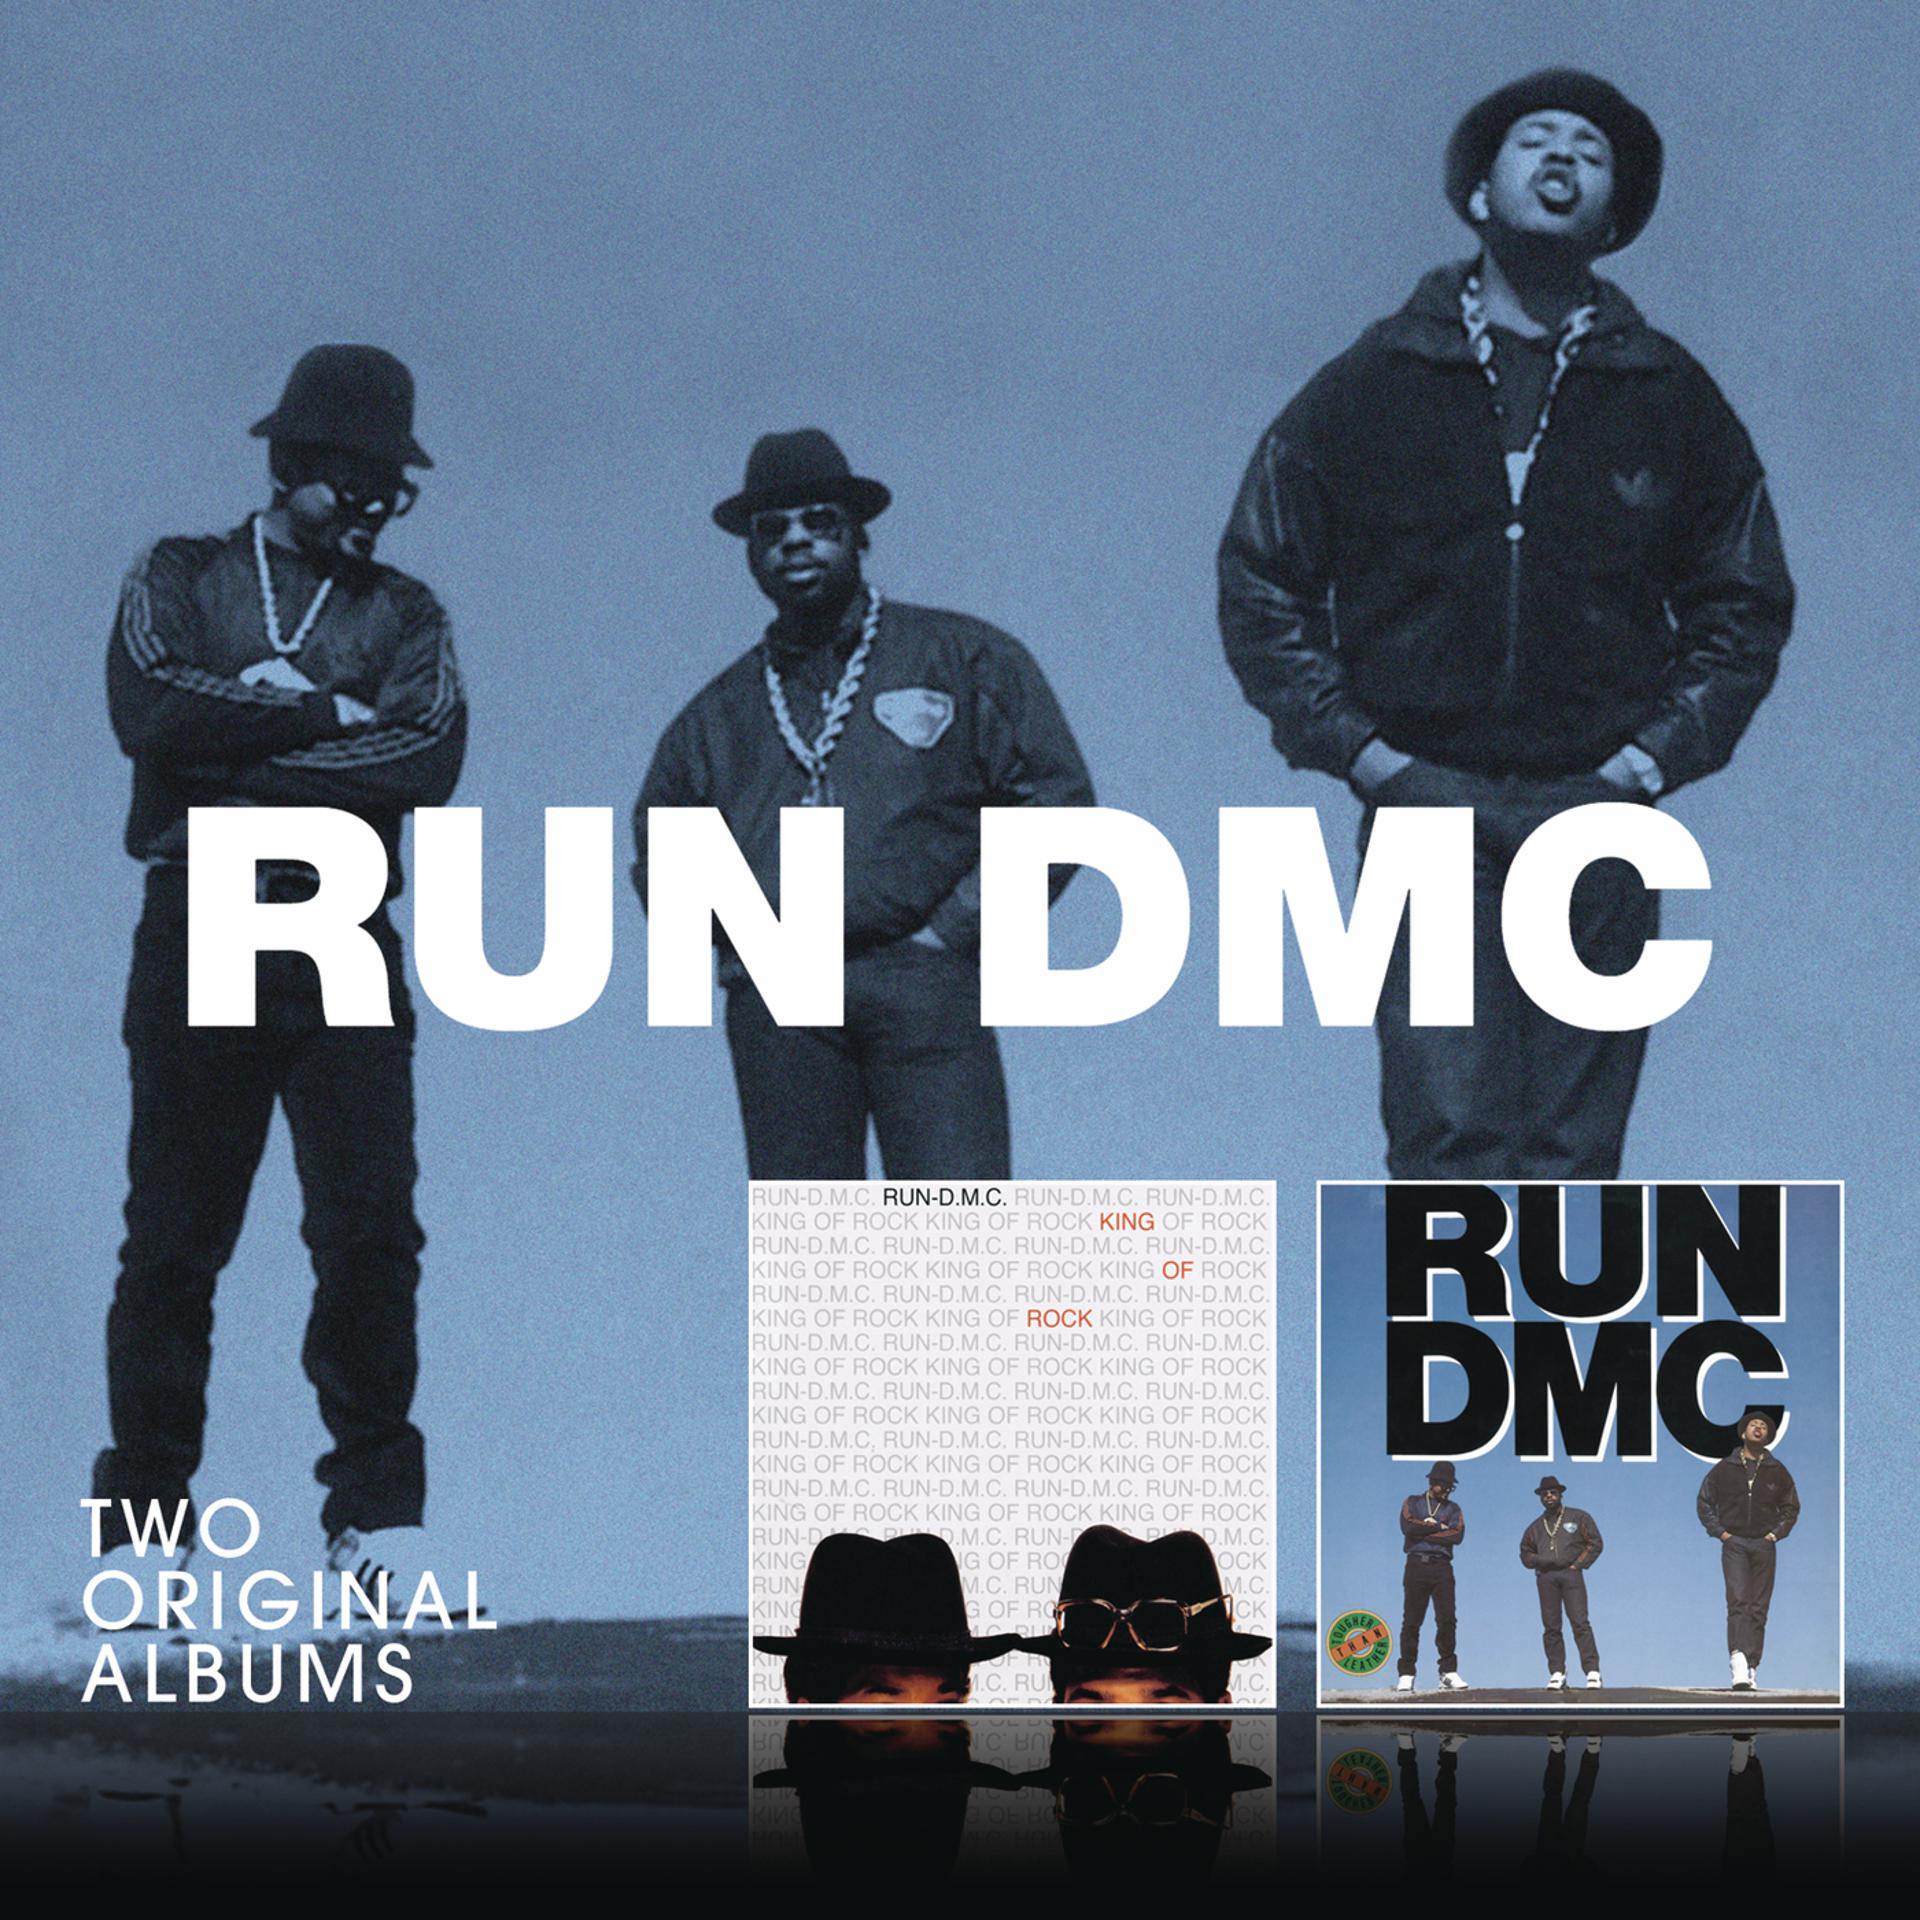 Run dmc like